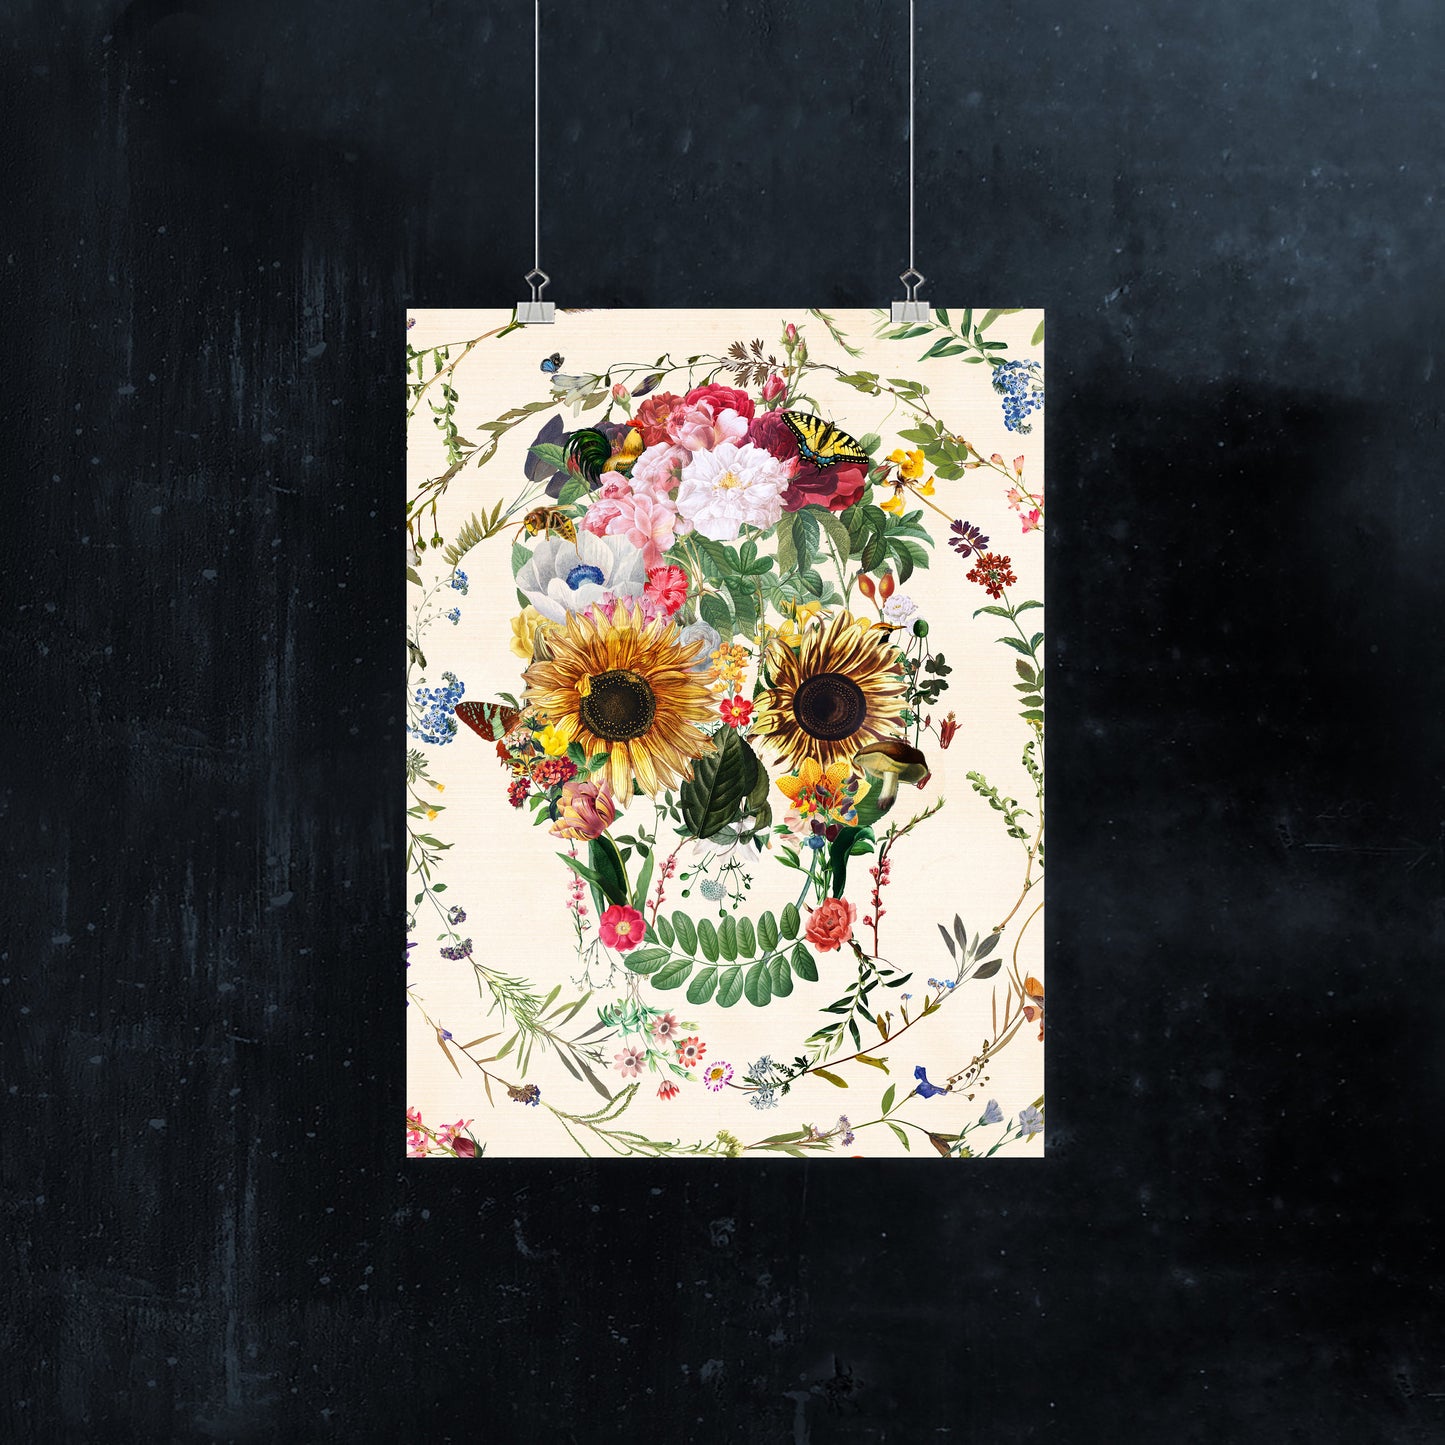 Floral Skull Poster, Circle Flower Skull Art Print, Sugar Skull Poster Wall Art Gift, Boho Floral Skull Art Home Decor